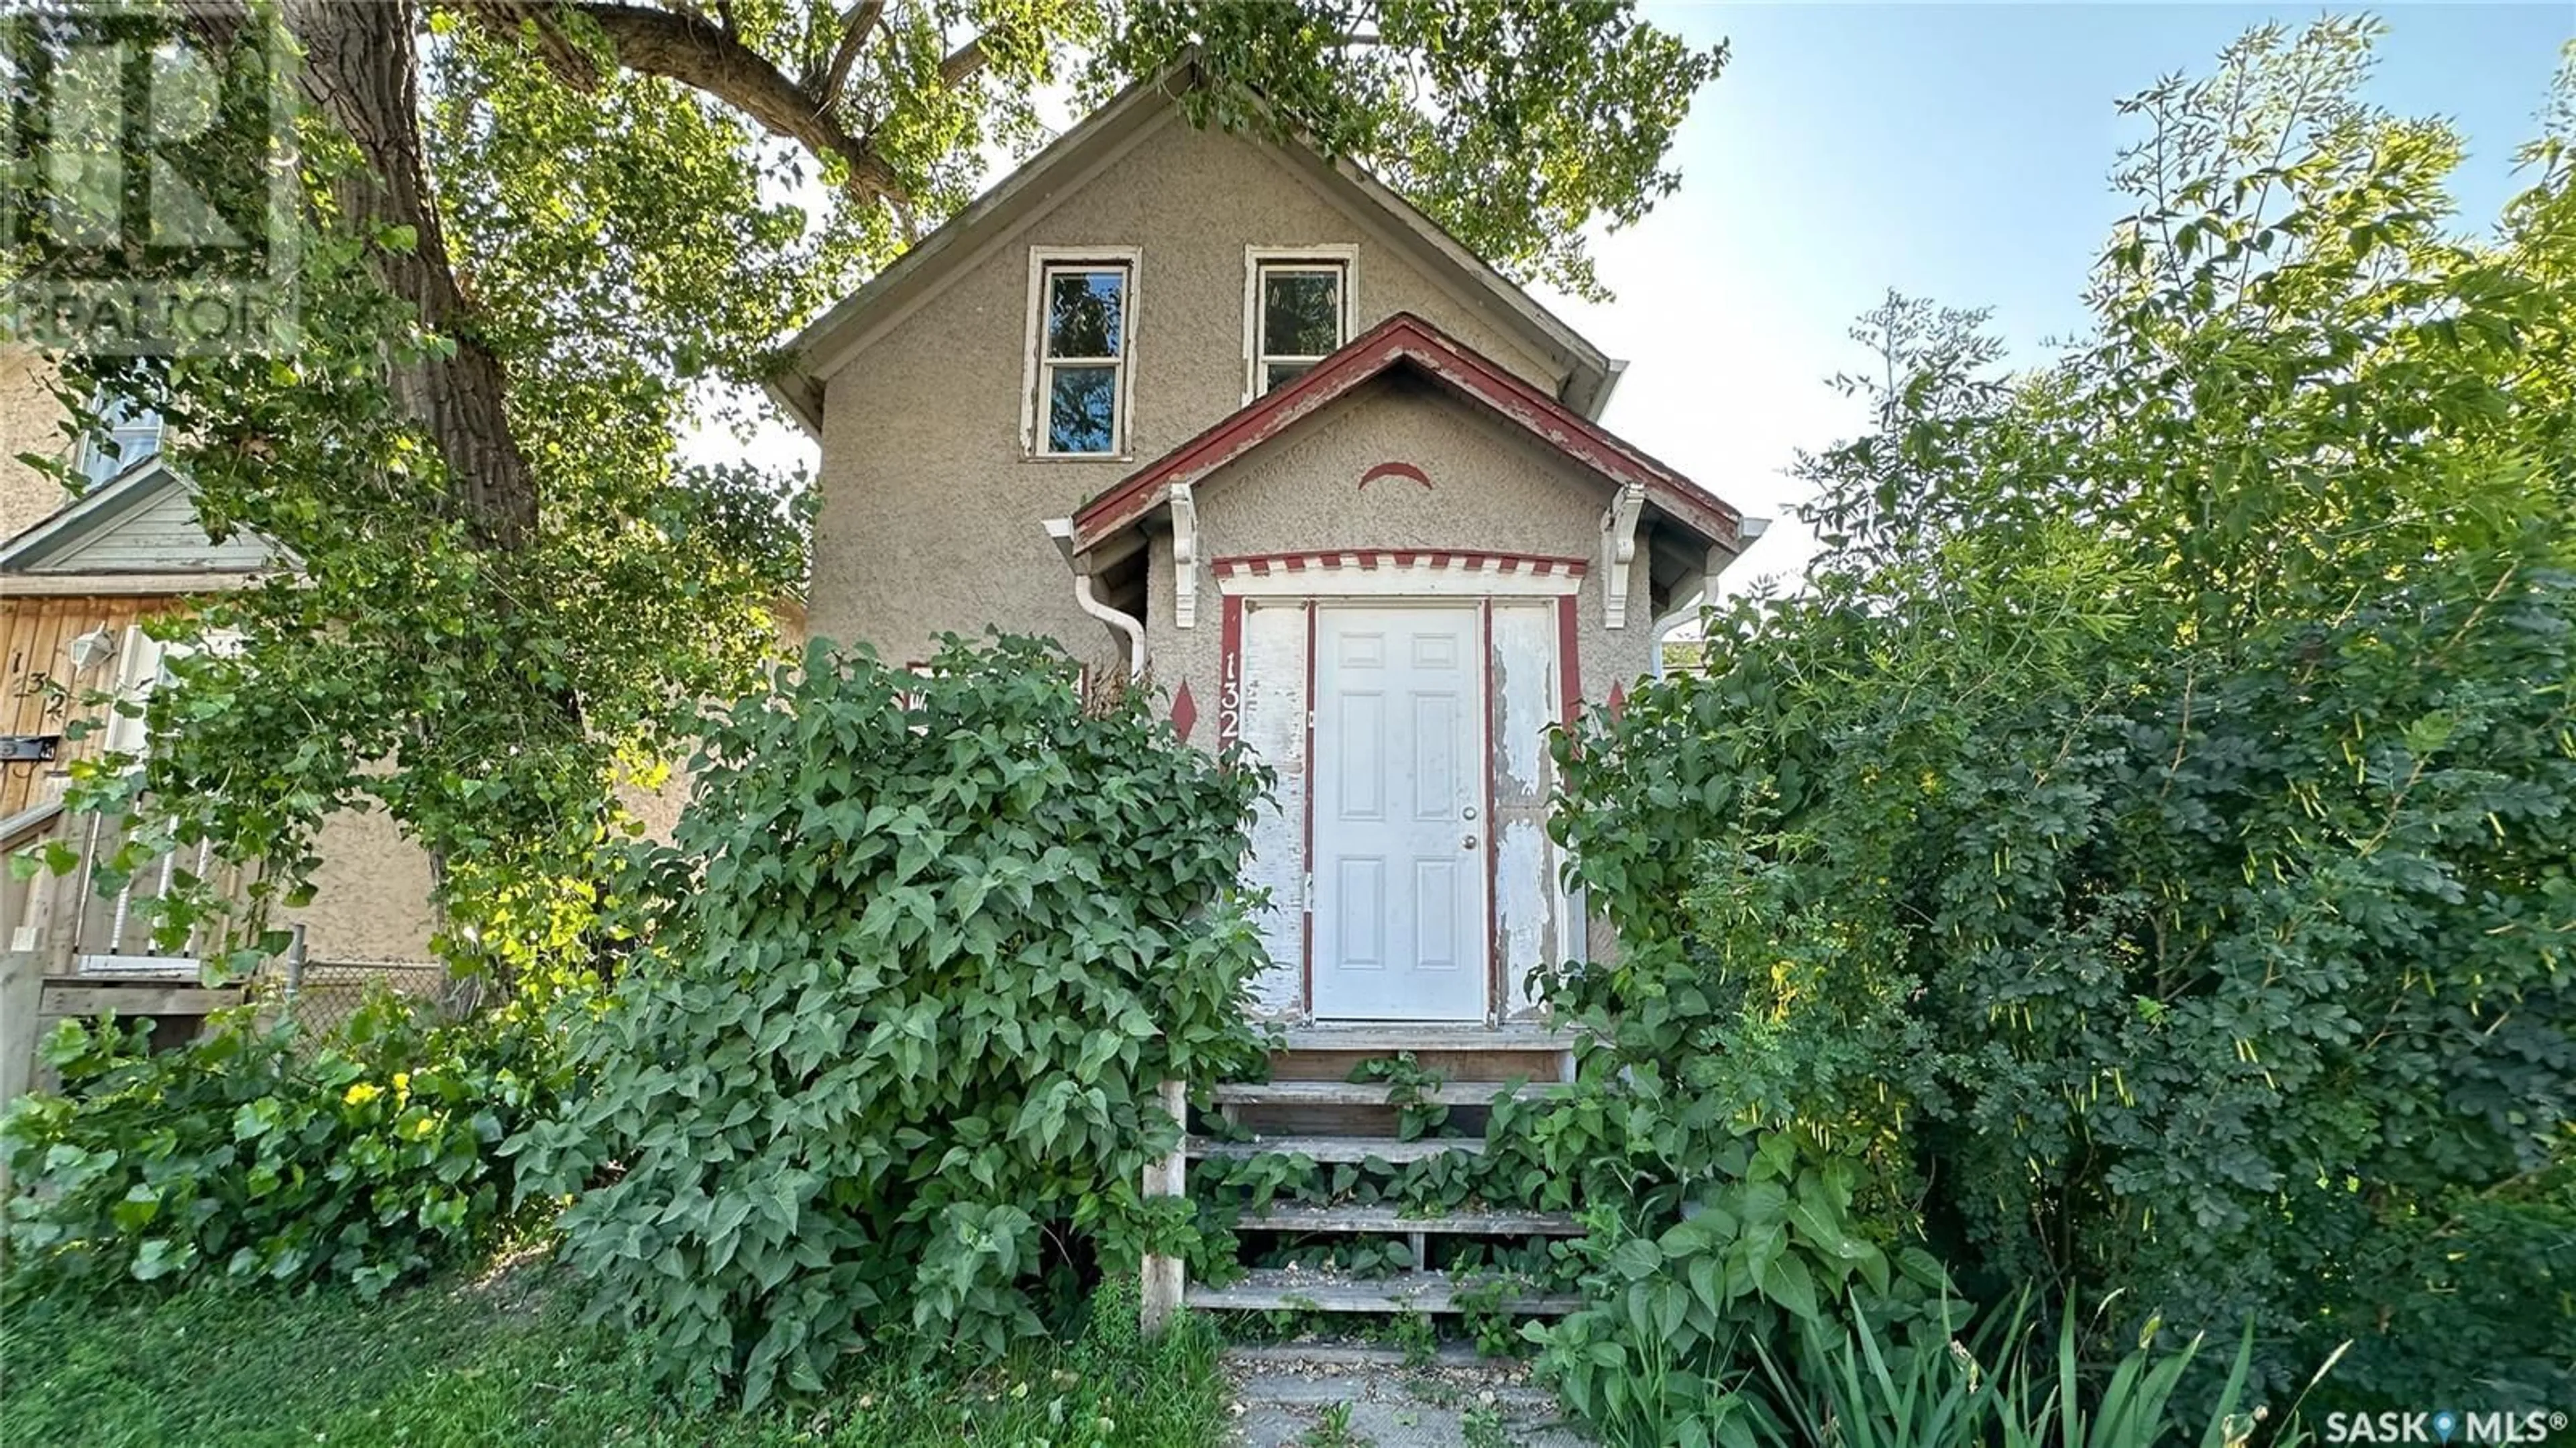 Cottage for 1324 ANGUS STREET, Regina Saskatchewan S4T1Y8